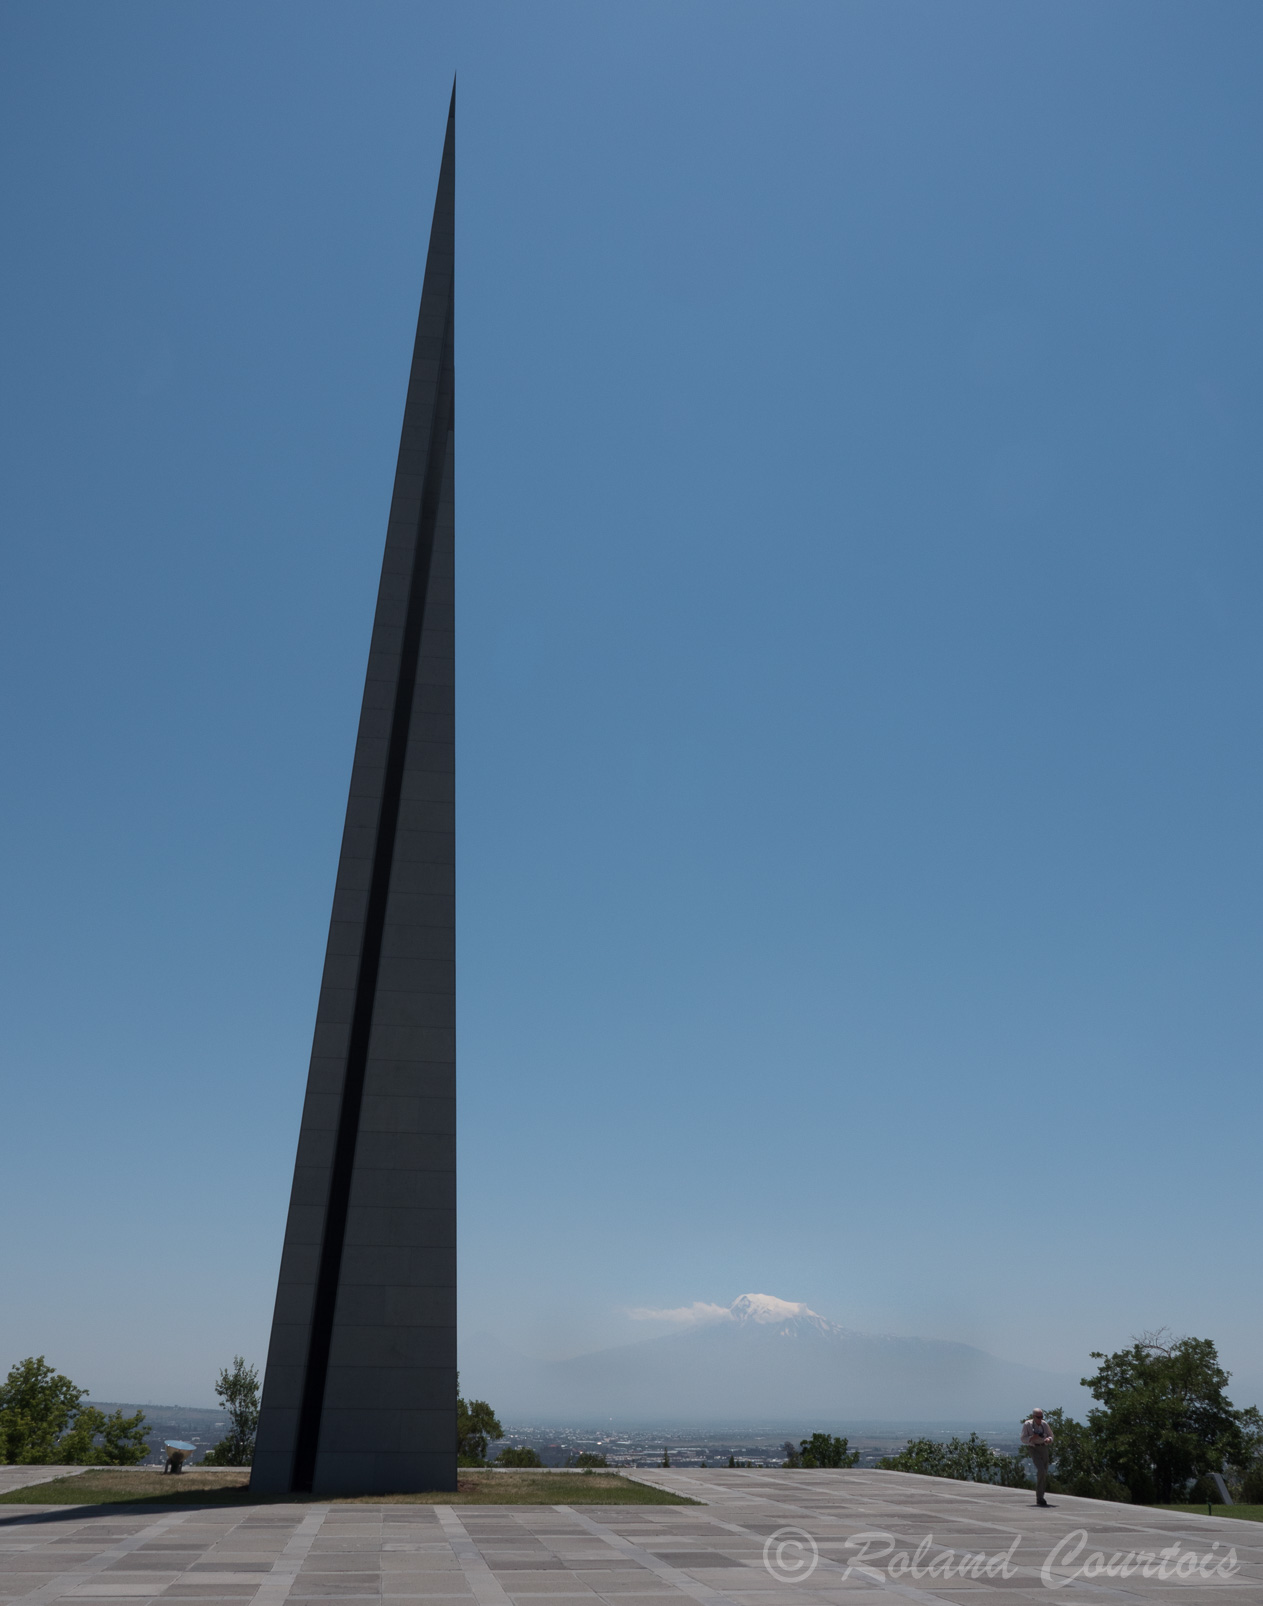 Mémorial de Tsitsernakaberd "La forteresse des hirondelles" Dédié aux victimes du génocide de 1915. Pointe de granit de 44 m de haut représente la renaissance de la nation arménienne..